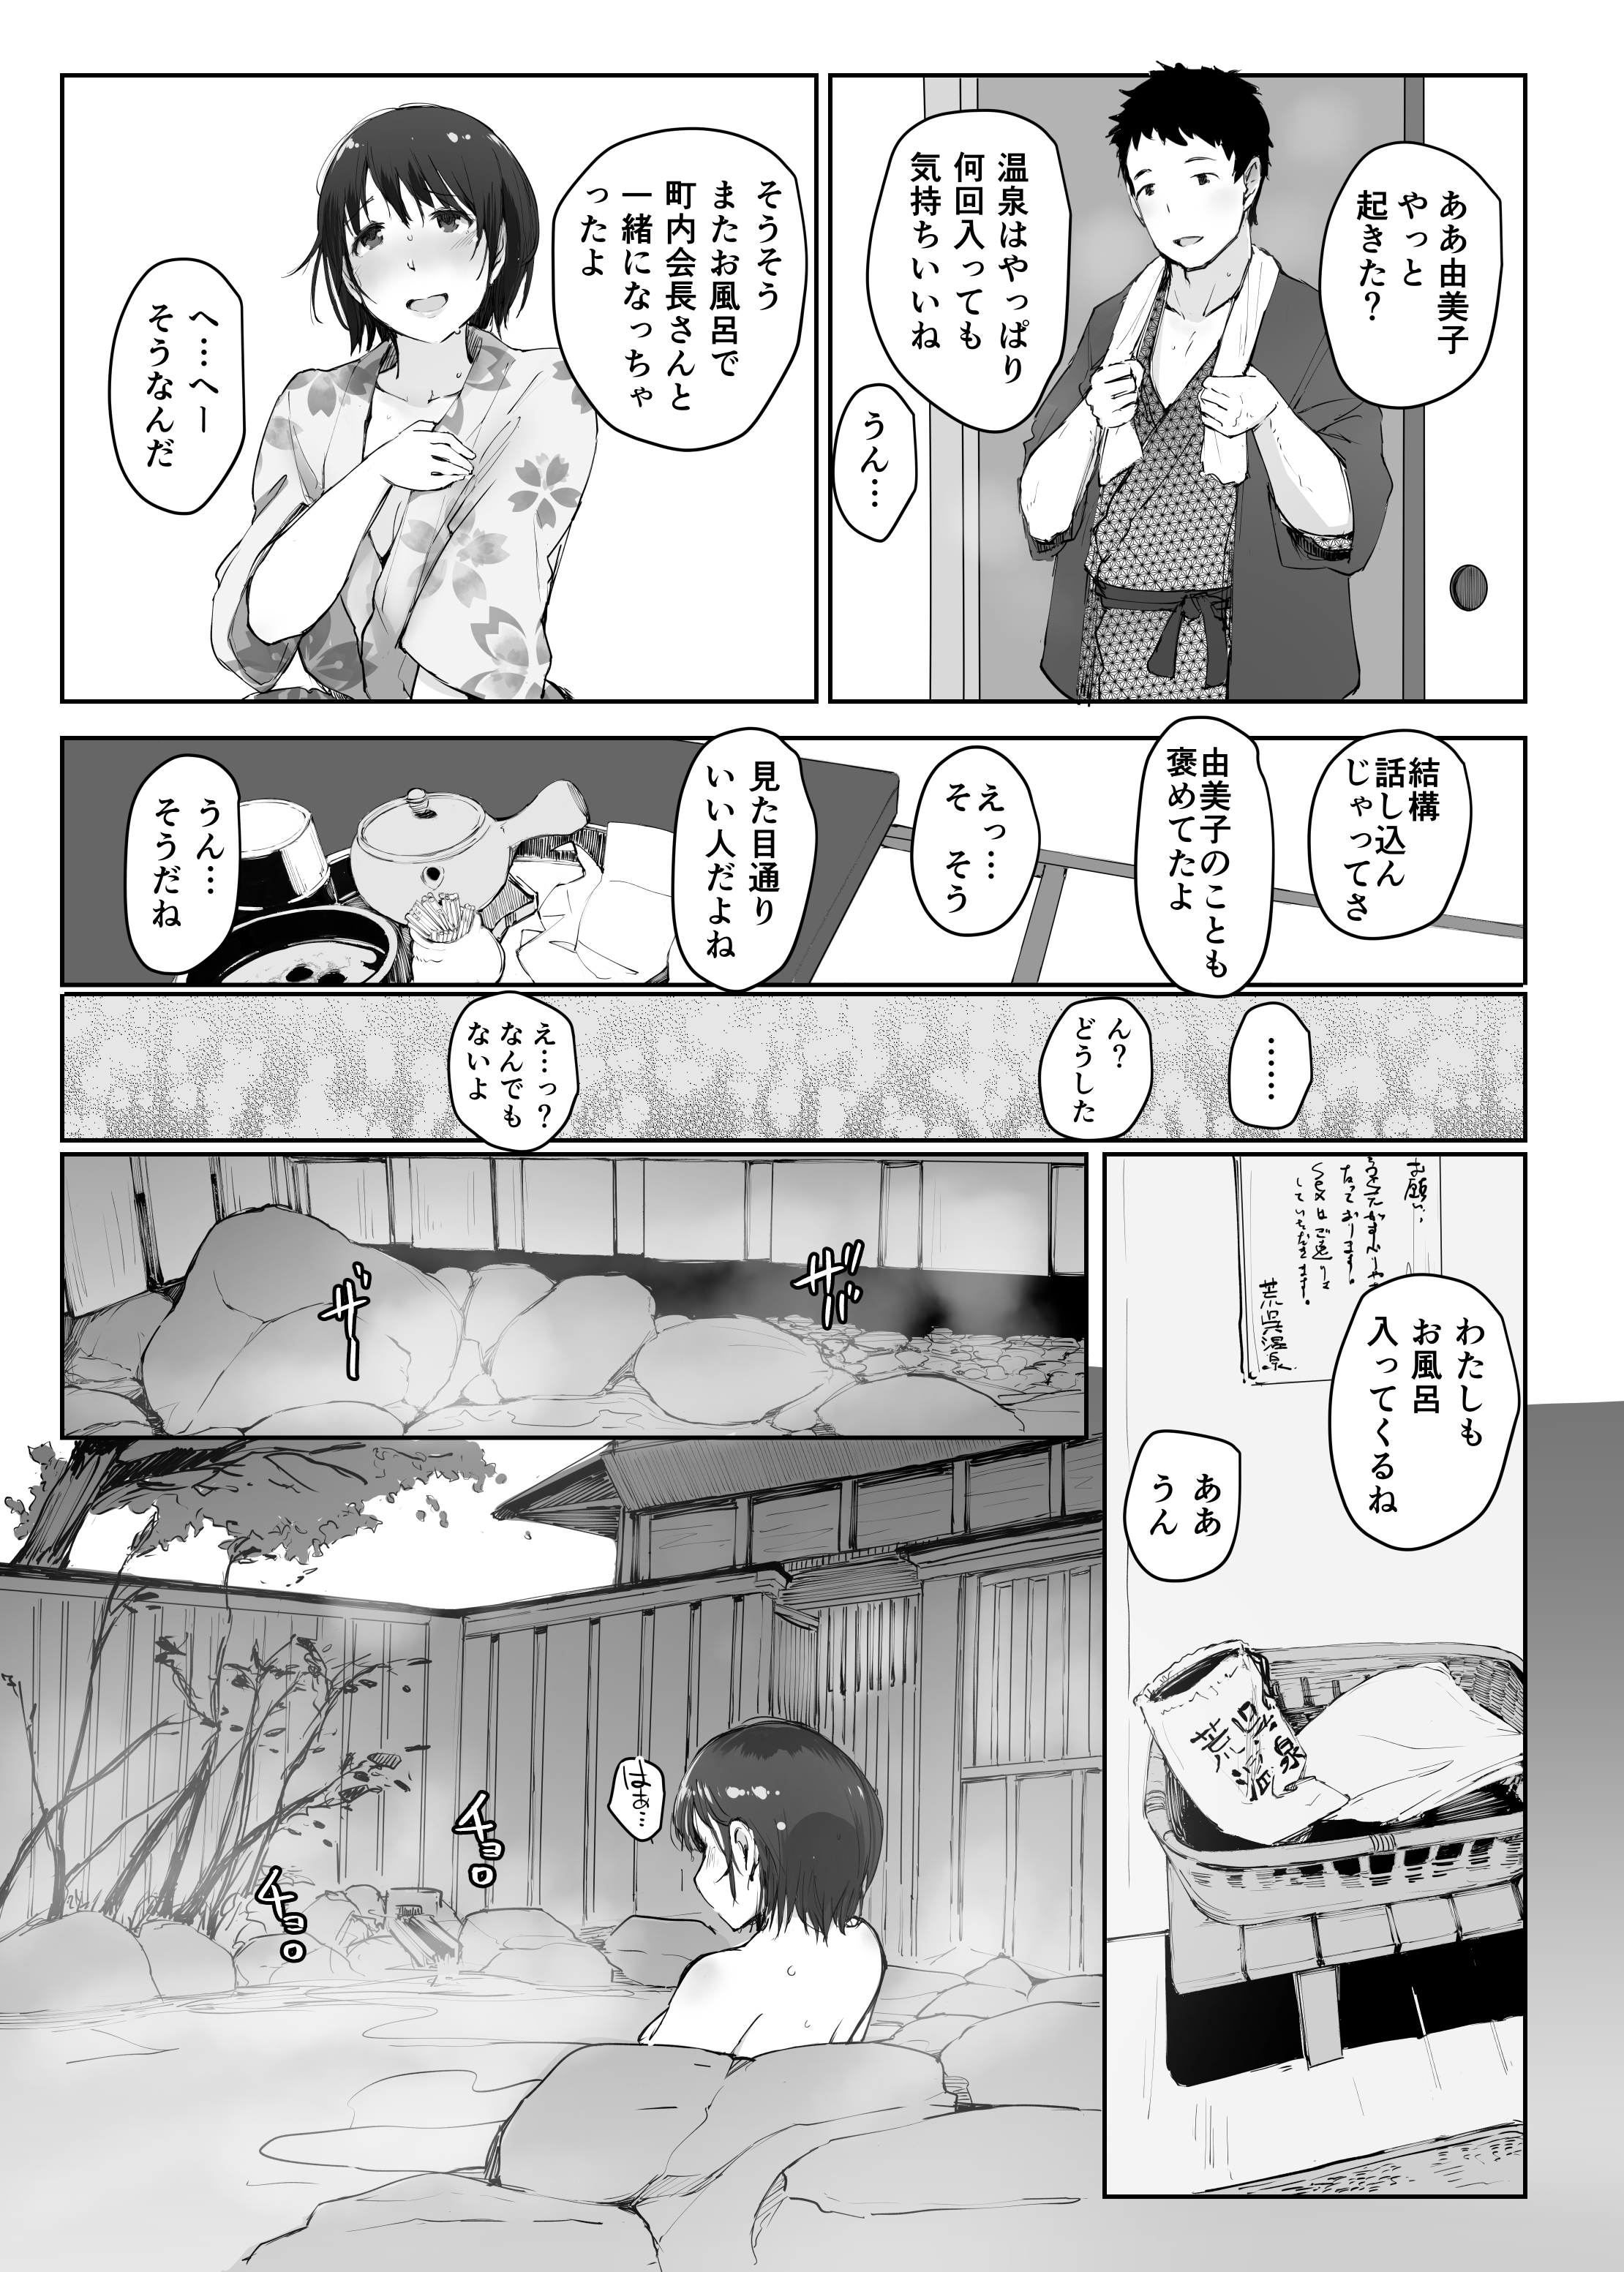 【オリジナル】人妻の由美子さんが旅行先でおじさんに寝取られて中出しをキメられてしまう…。の画像14枚目